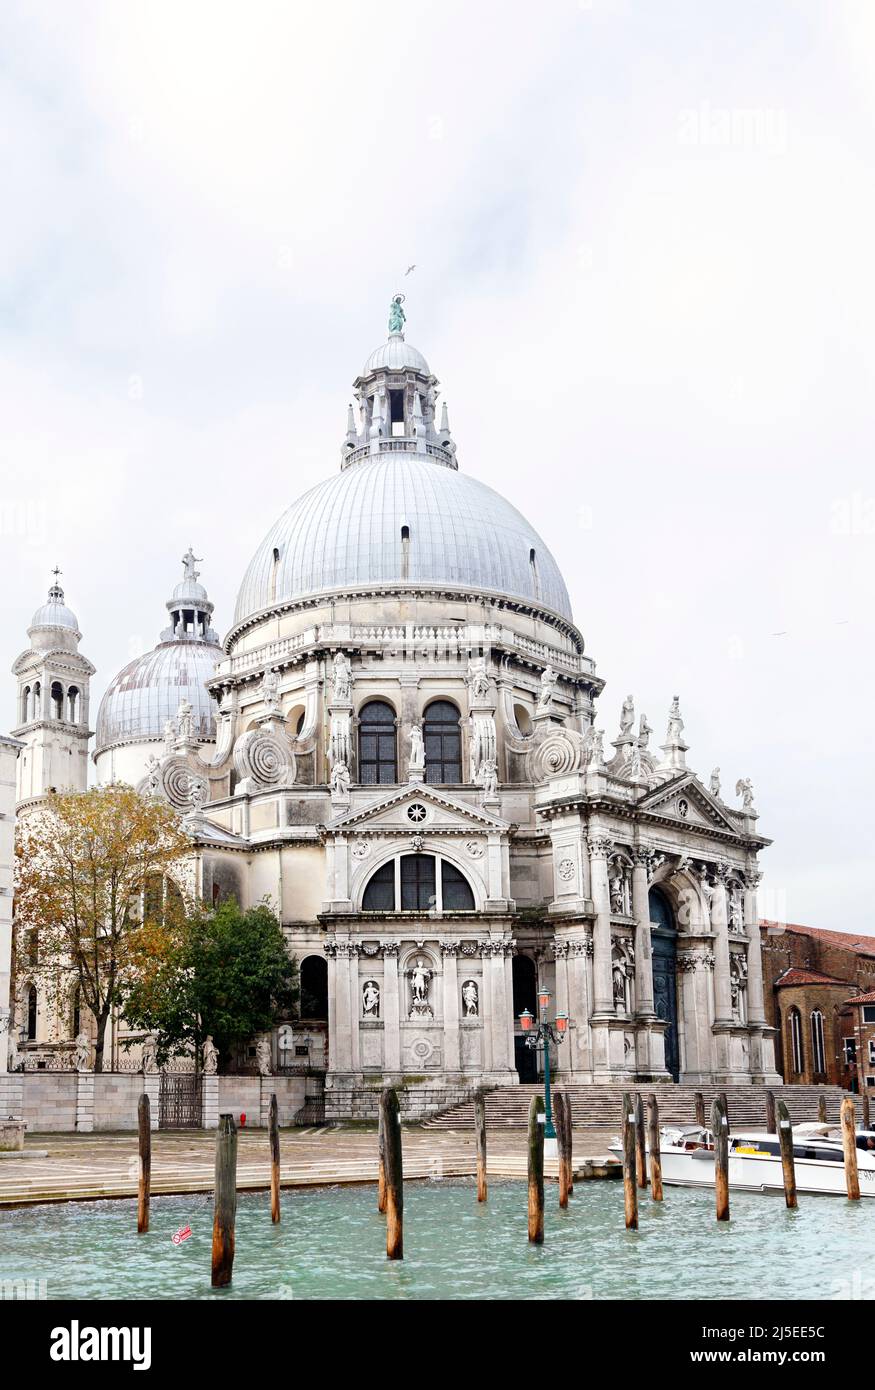 Santa Maria della Salute church, Venice, Italy Stock Photo